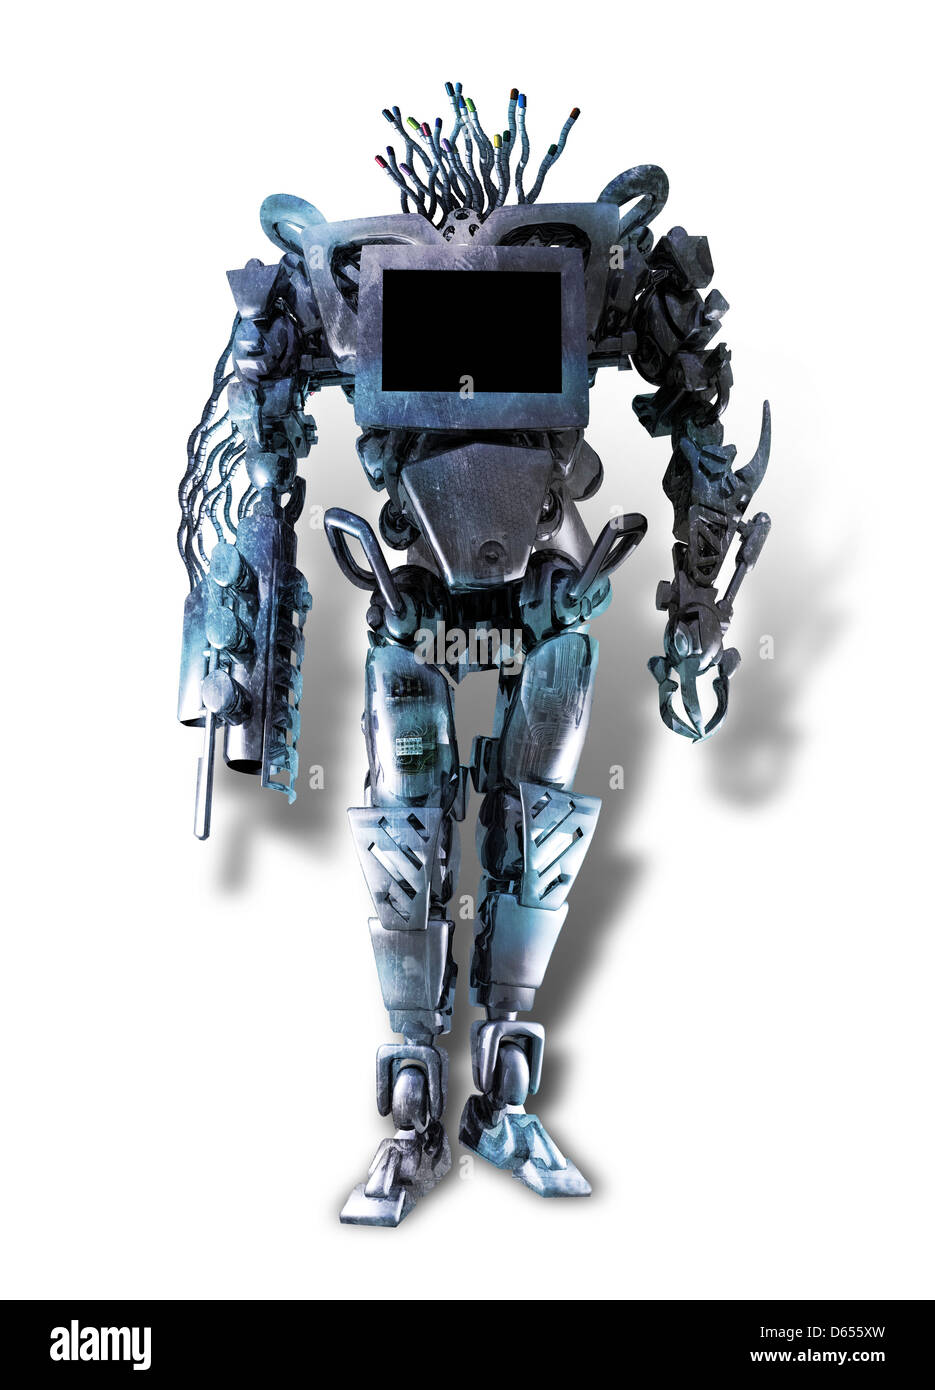 Military robot, conceptual artwork Stock Photo